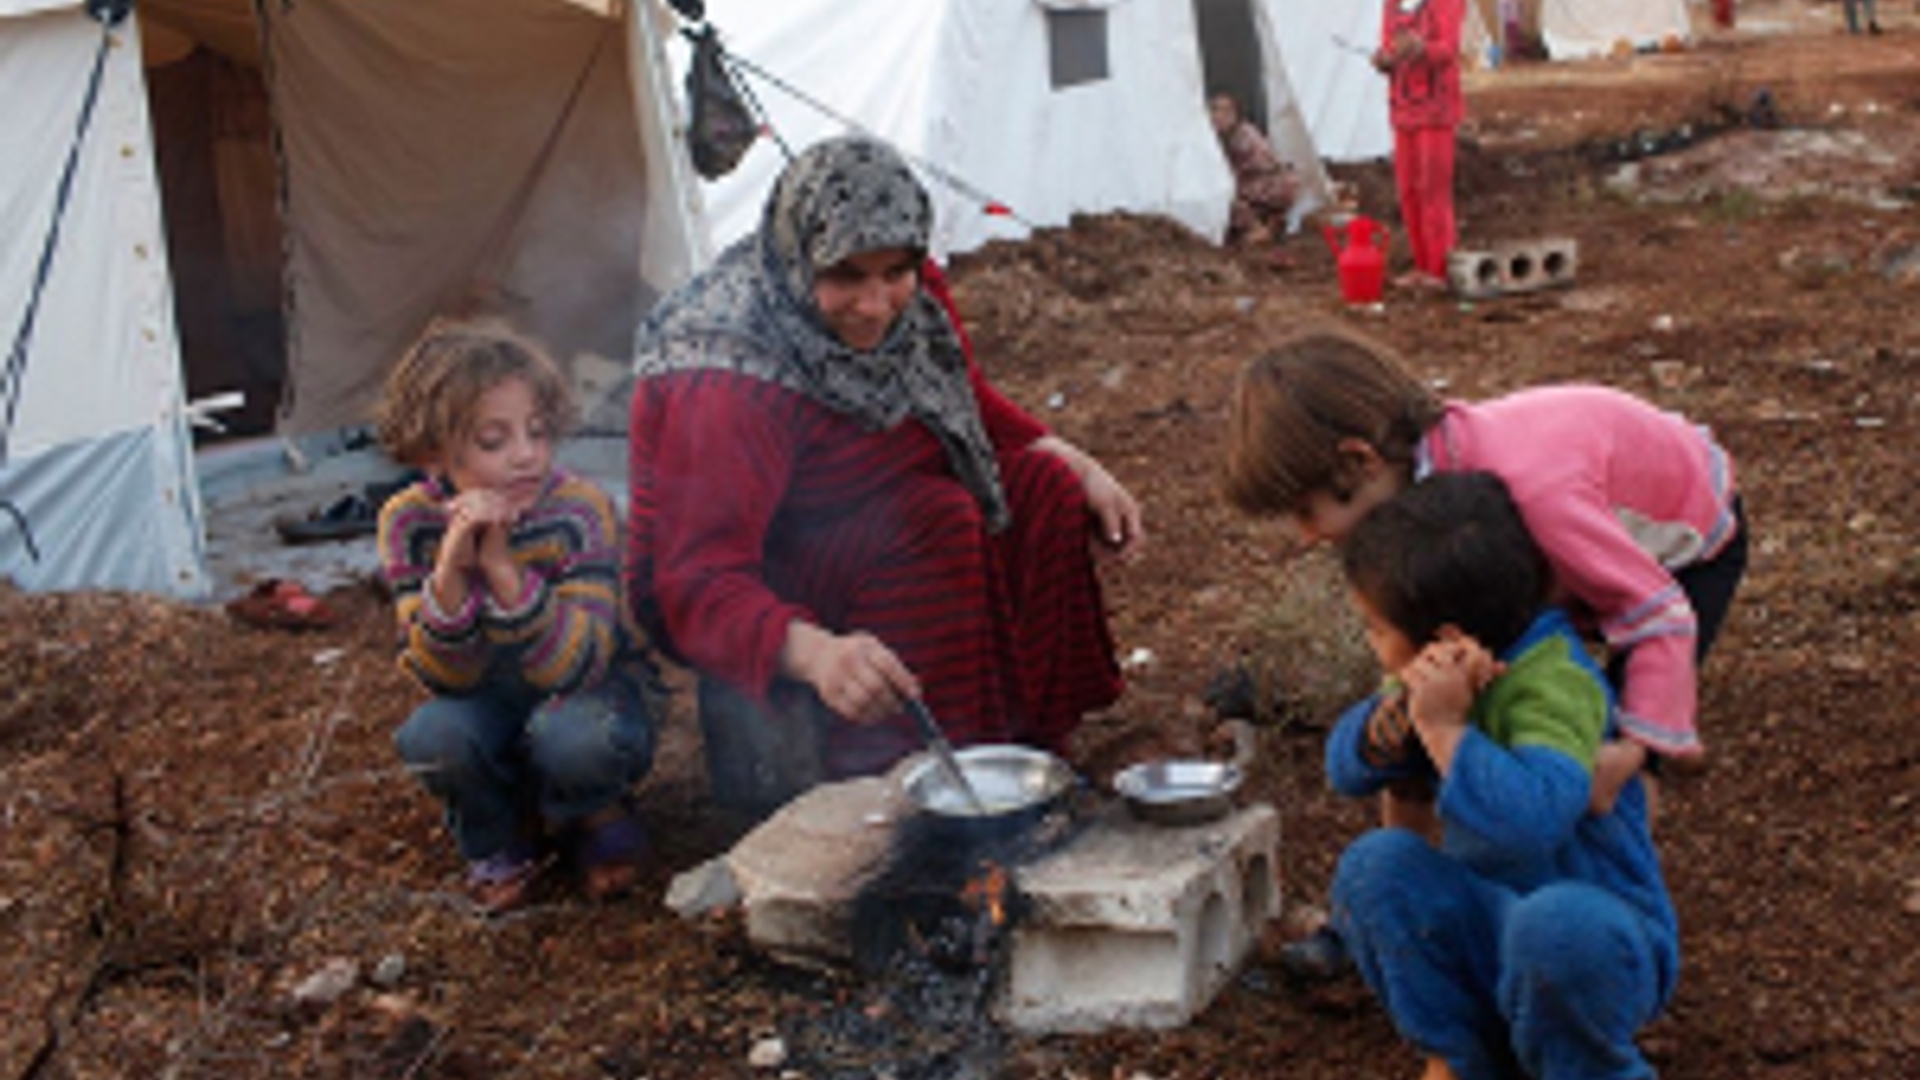 Flickr_SyrischeVluchtelingen_FreedomHouse_300